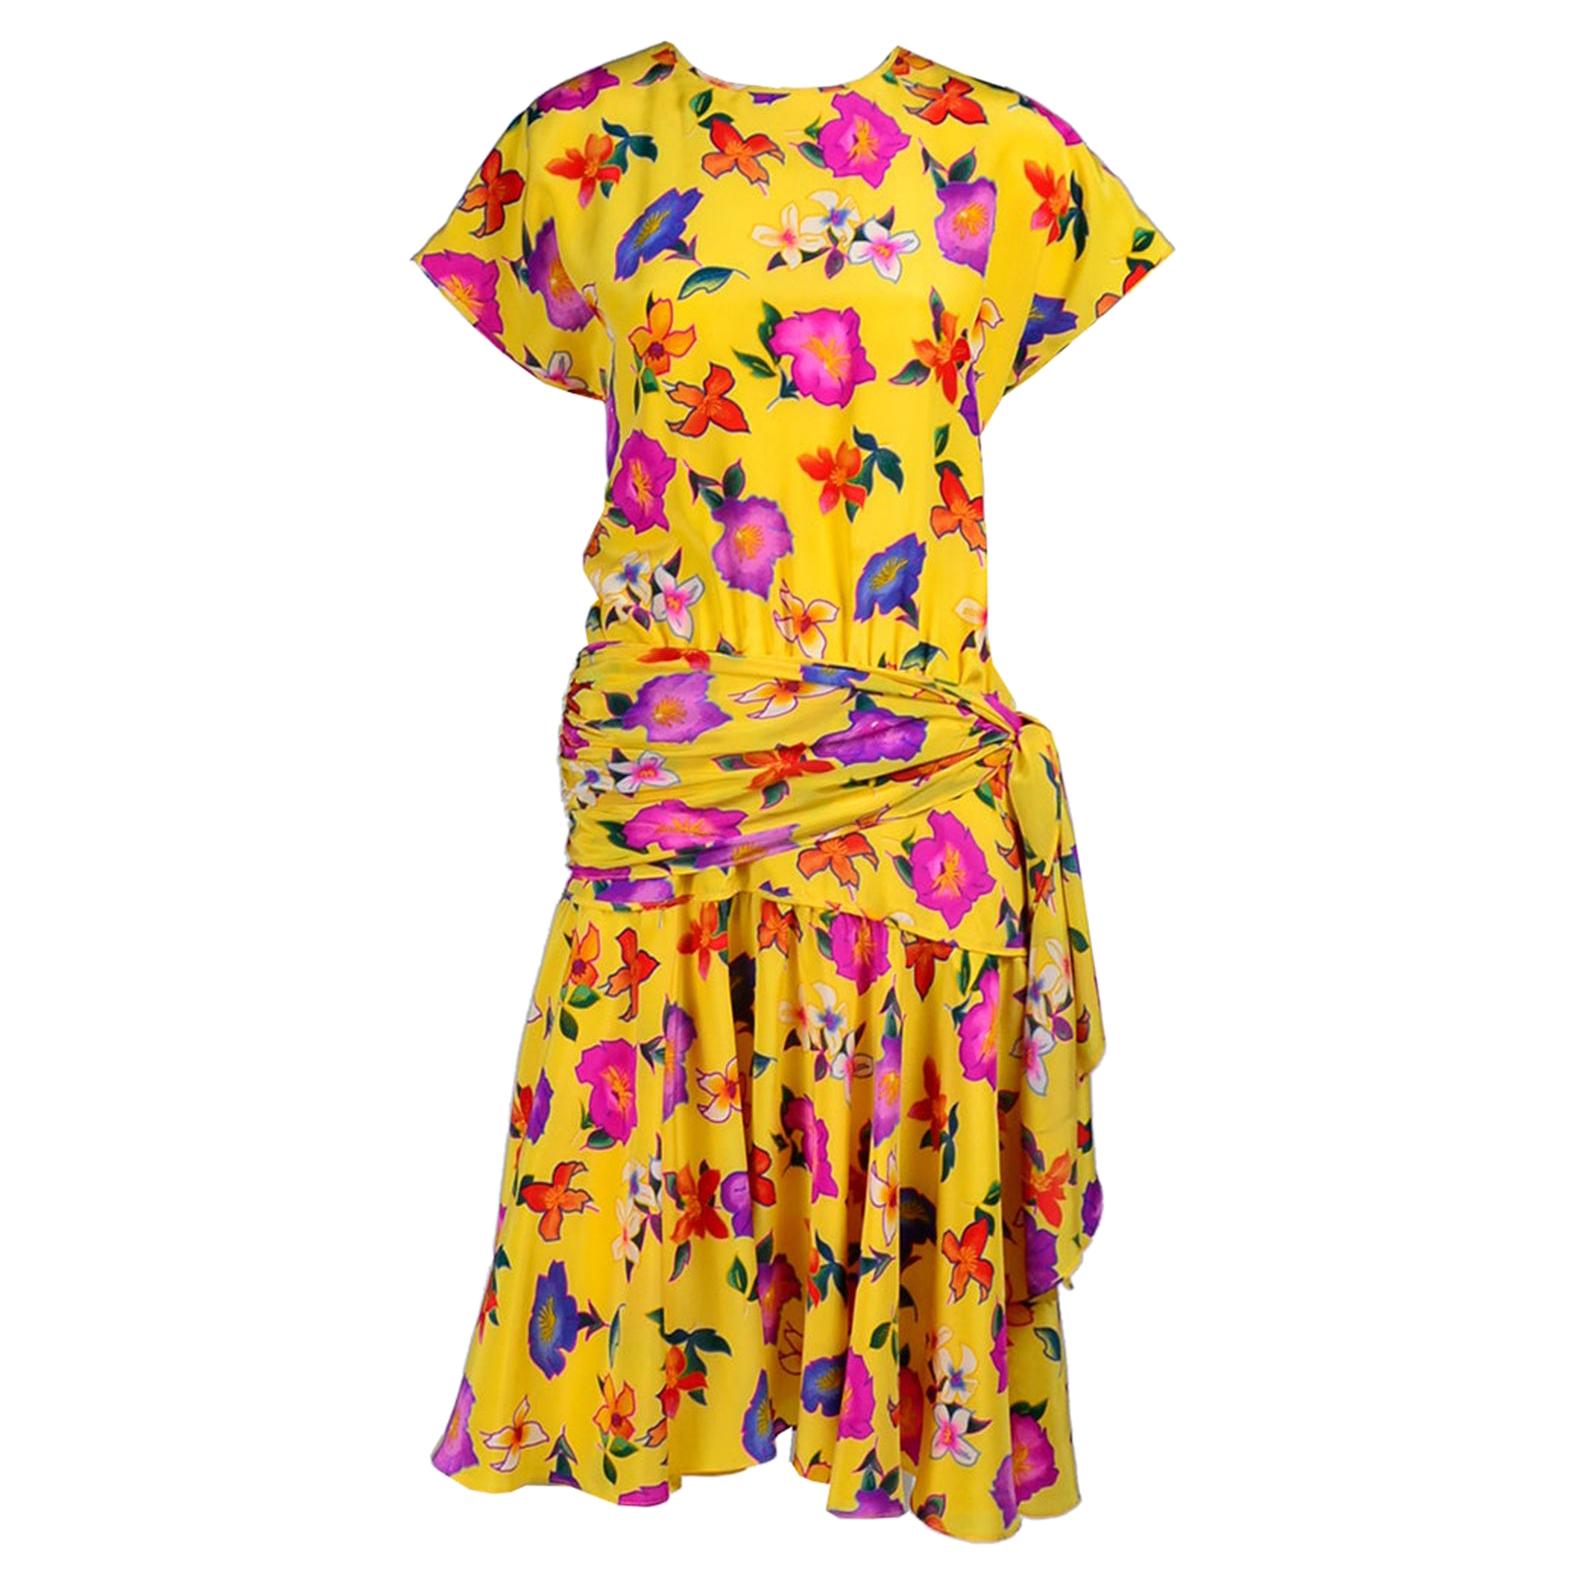 Vintage Escada Dress in a Yellow Floral Silk Print by Margaretha Ley Size 8/10